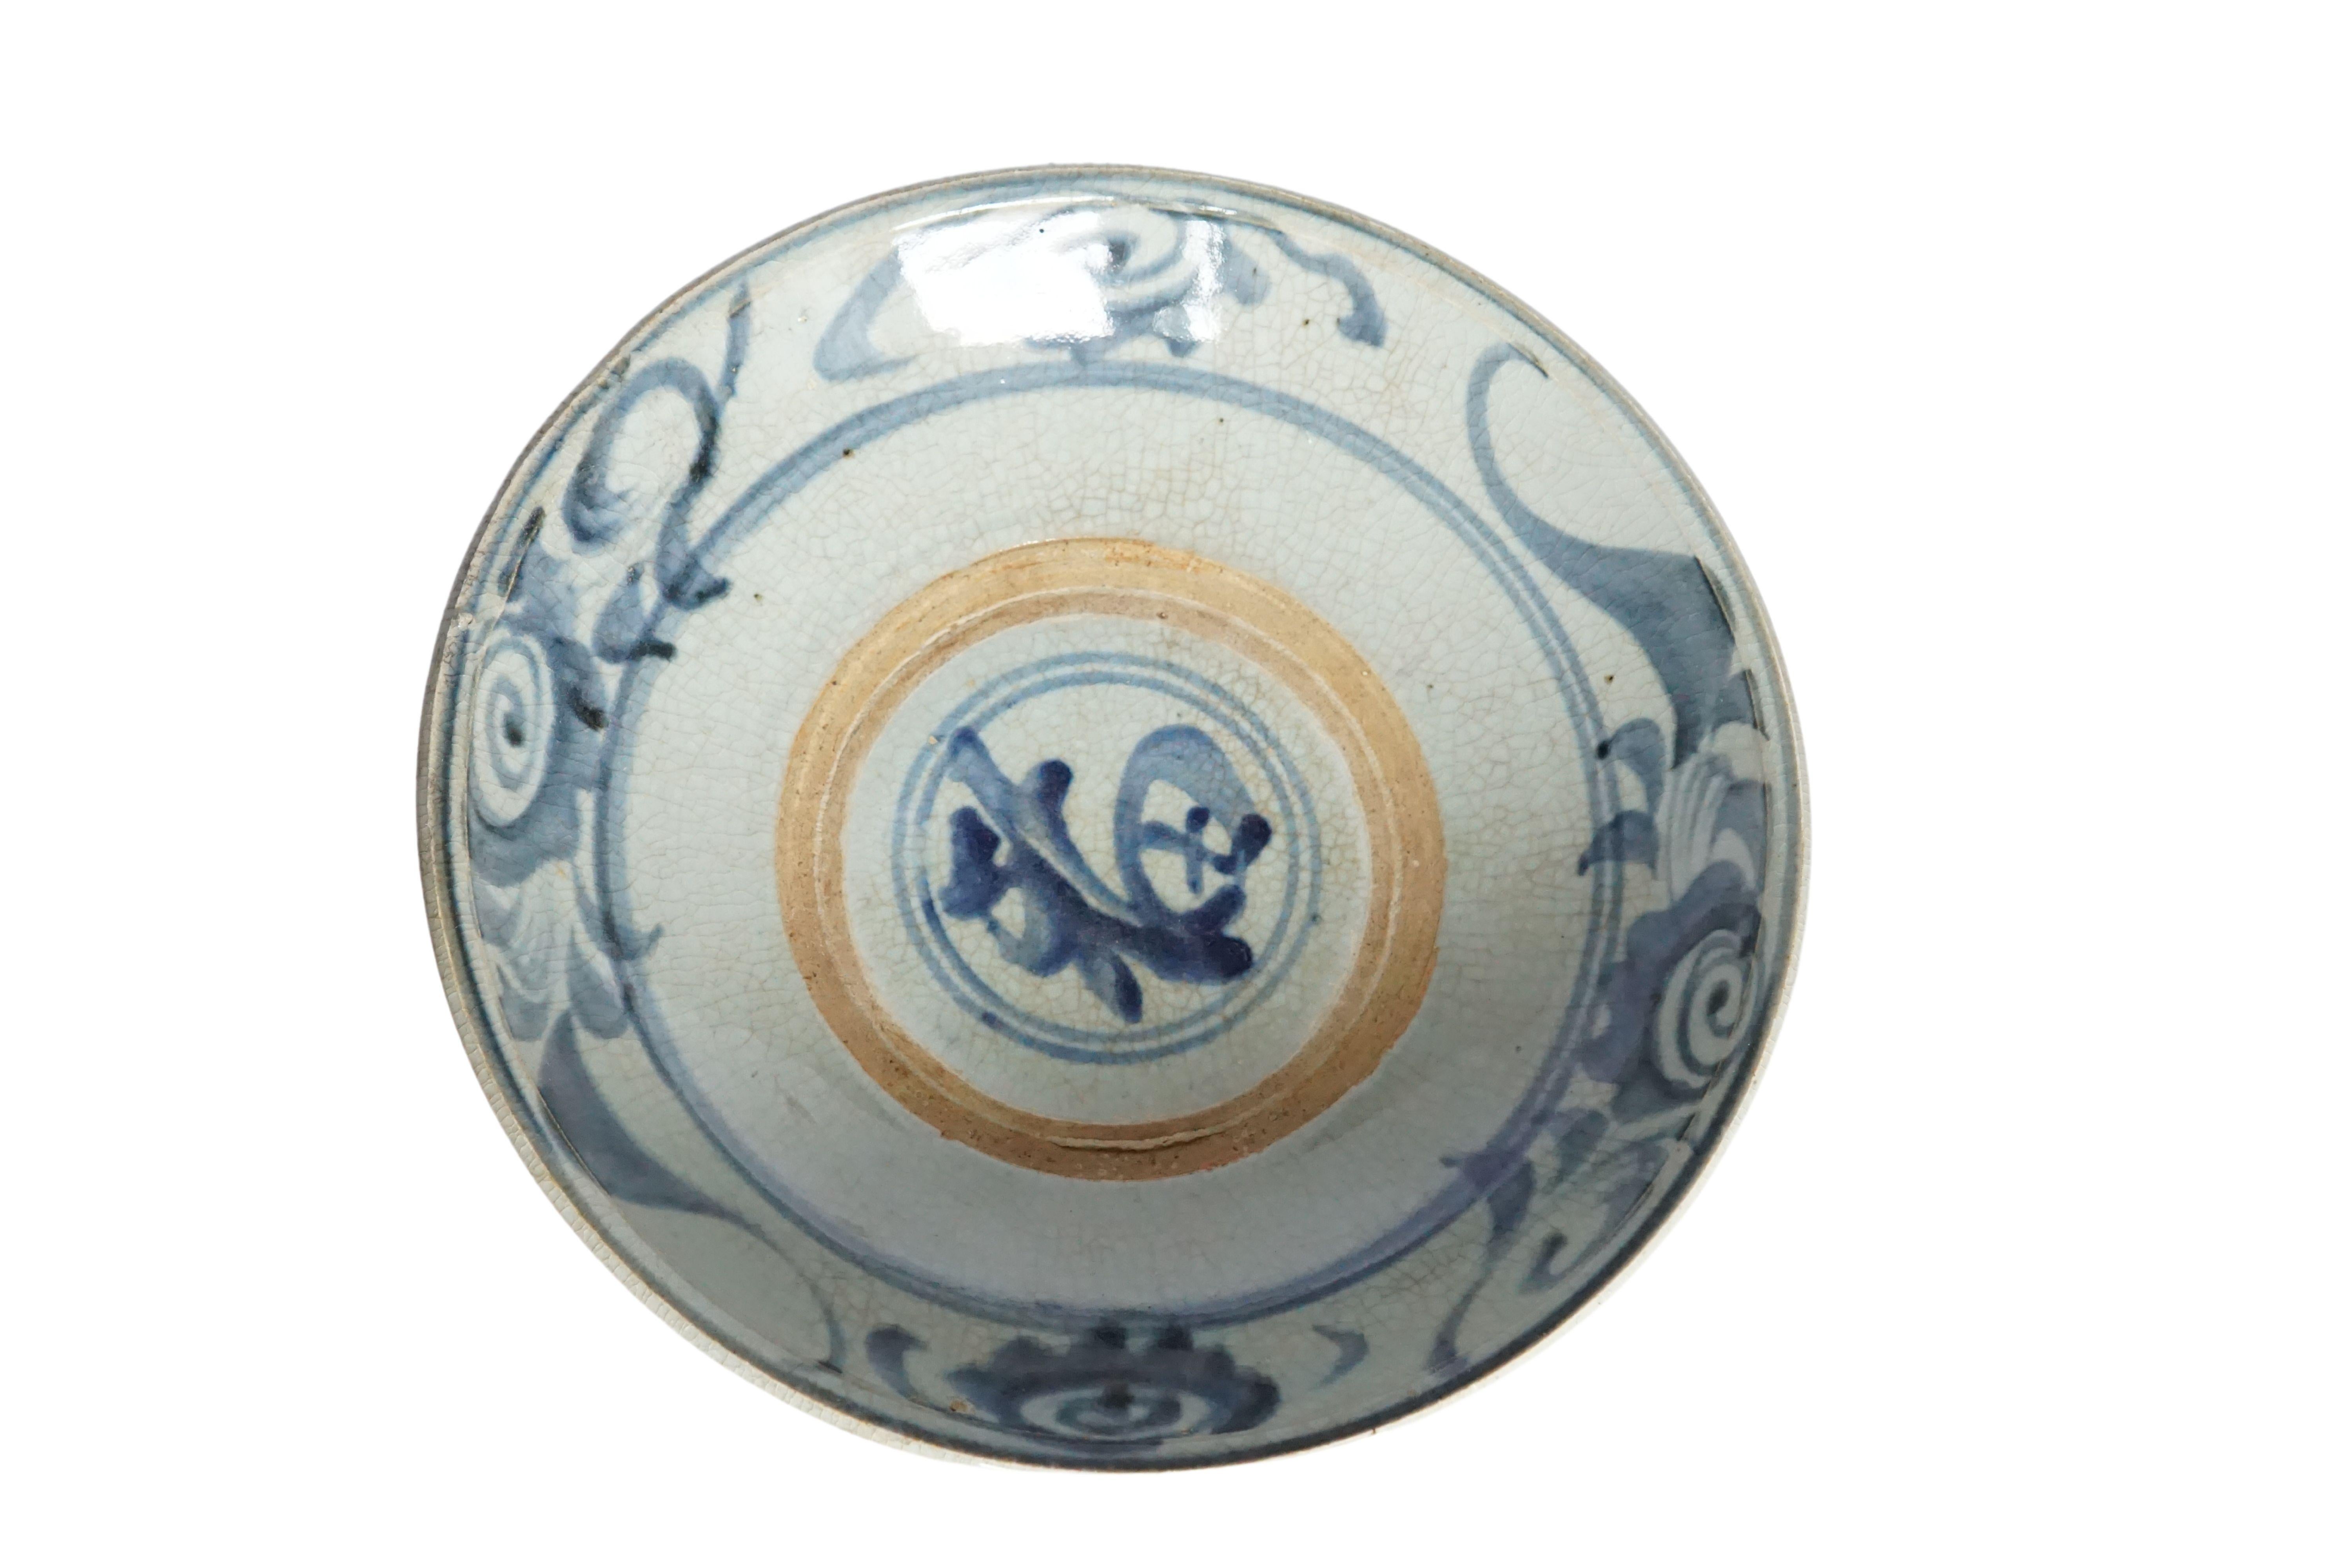 Dieser chinesische Keramikteller aus der Qing-Dynastie wird von einer blau-grauen Glasur dominiert und weist wunderschöne handgemalte blaue Striche auf. Einst als alltäglicher Teller verwendet, ist er heute ein großartiges Beispiel für chinesische